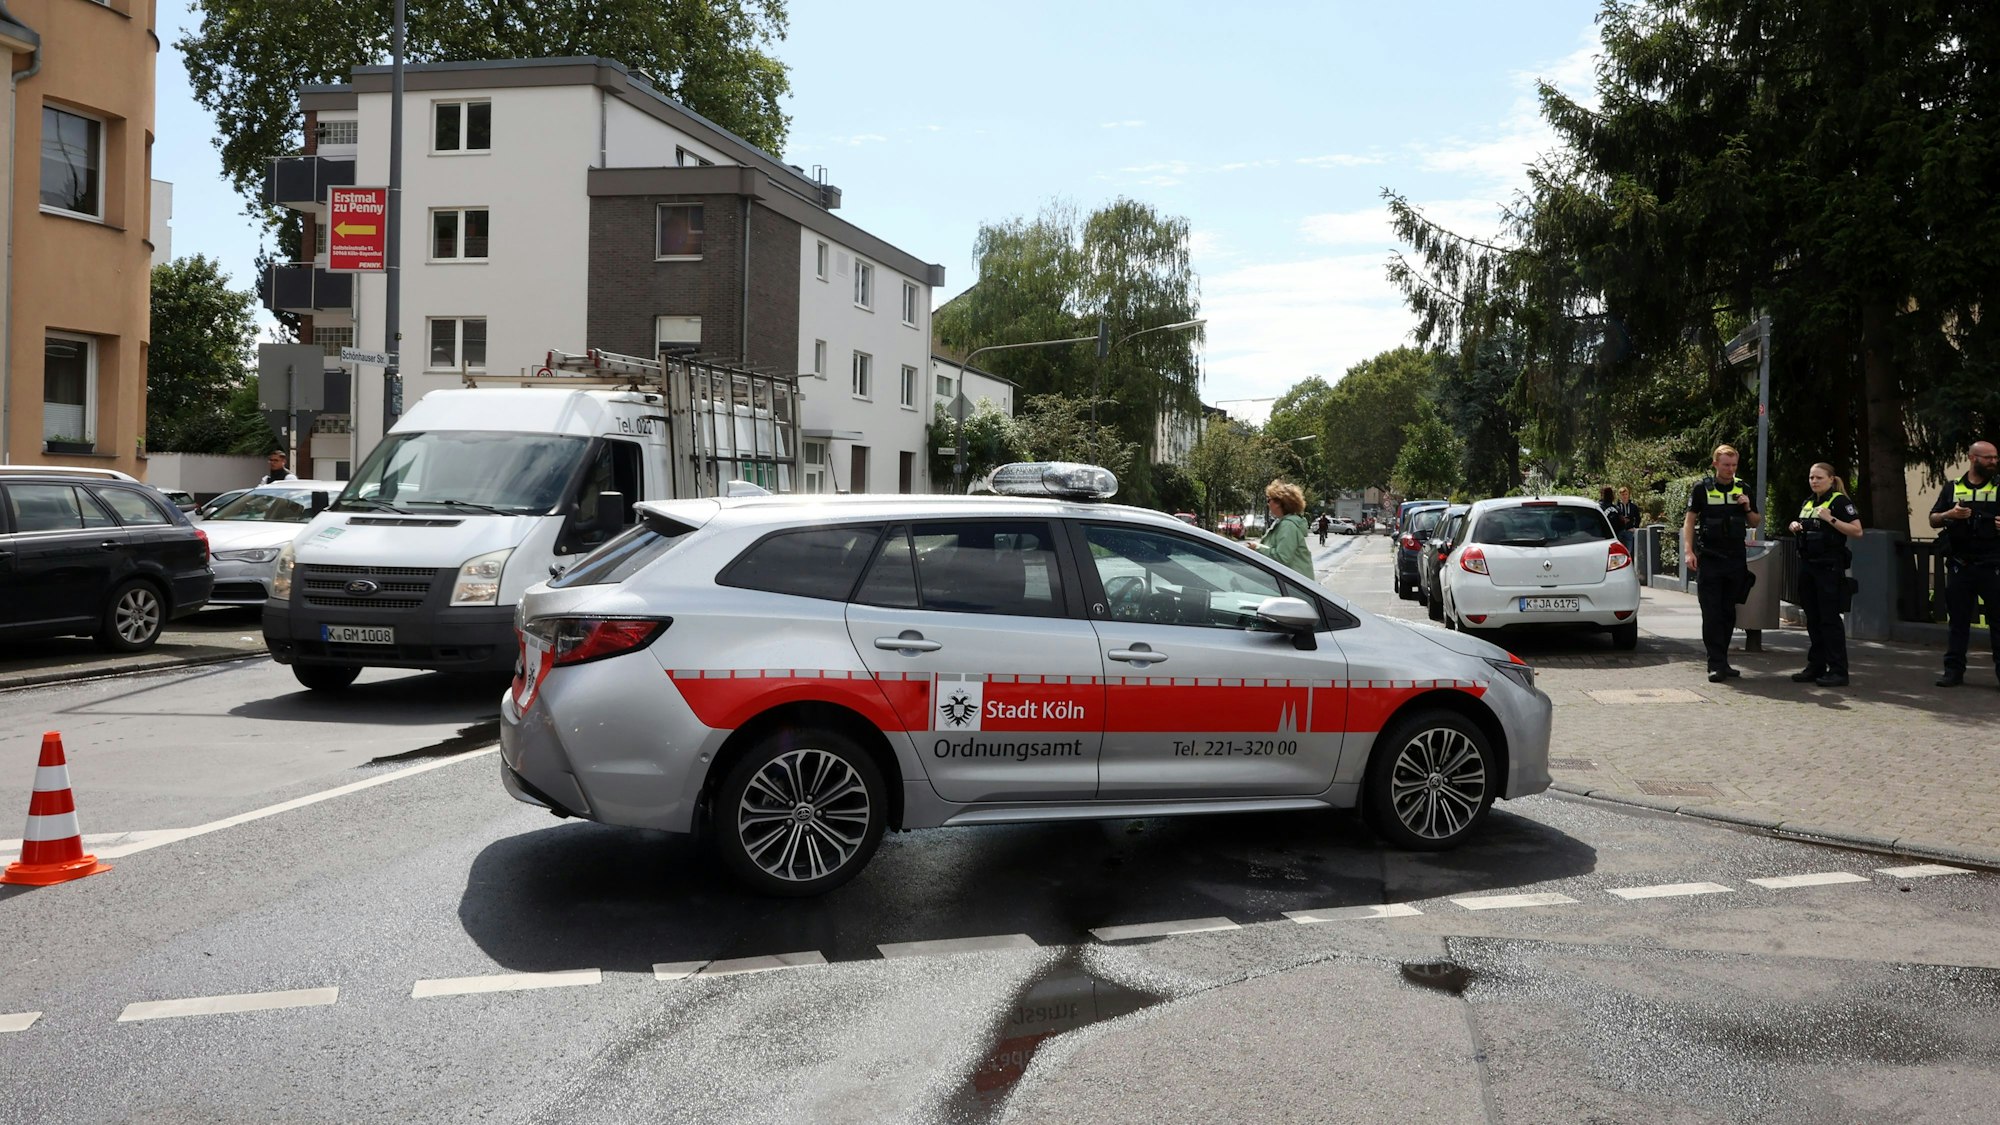 Ein Auto mit der Aufschrift Stadt Köln Ordnungsamt steht quer auf der Straße, rechts sind Mitarbeitende des Ordnungsamtes zu sehen.